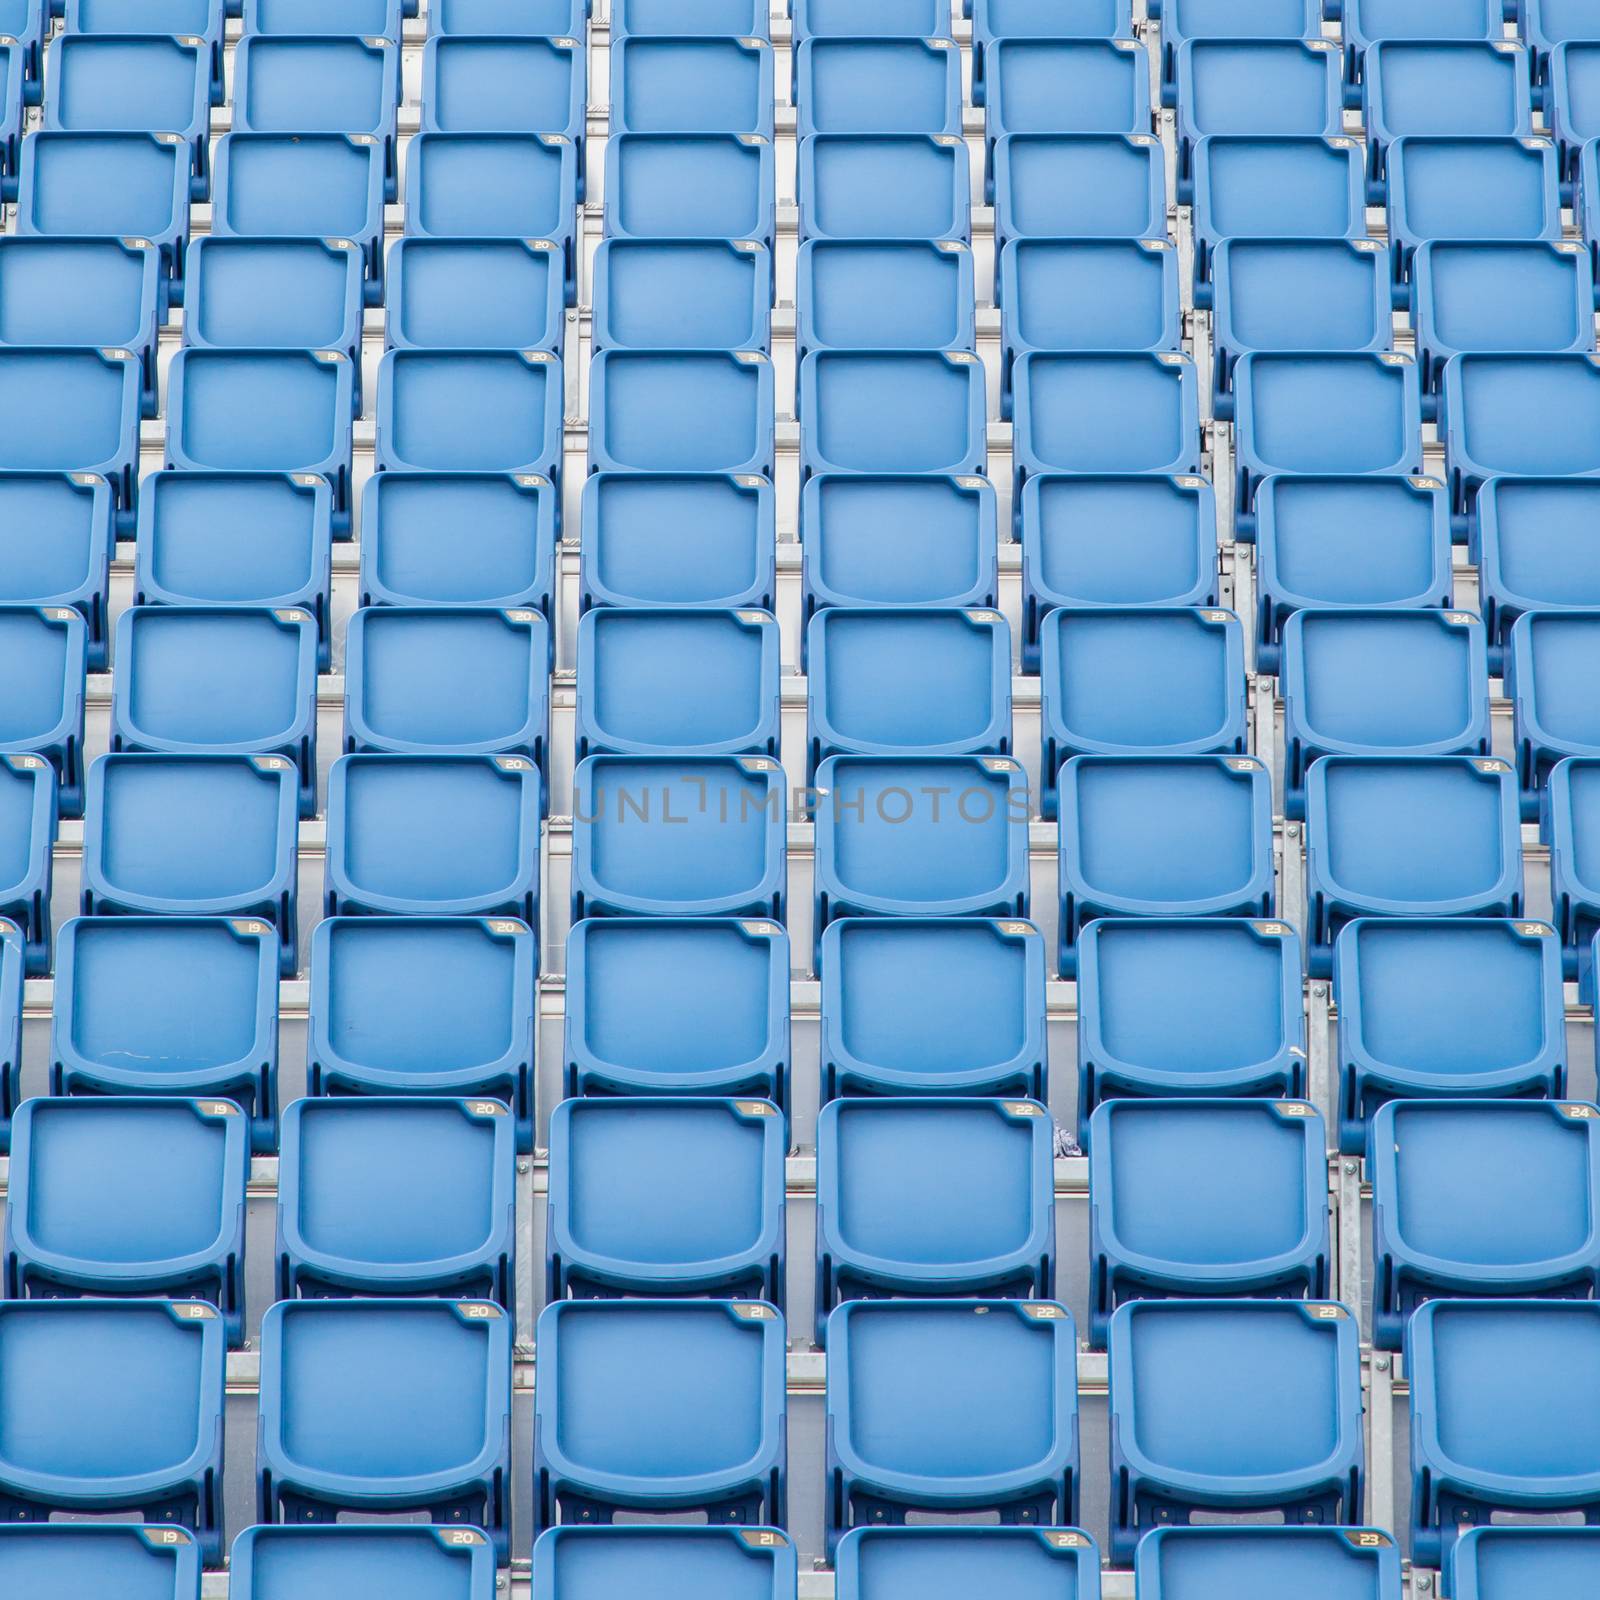 Blue seat in sport stadium by michaklootwijk